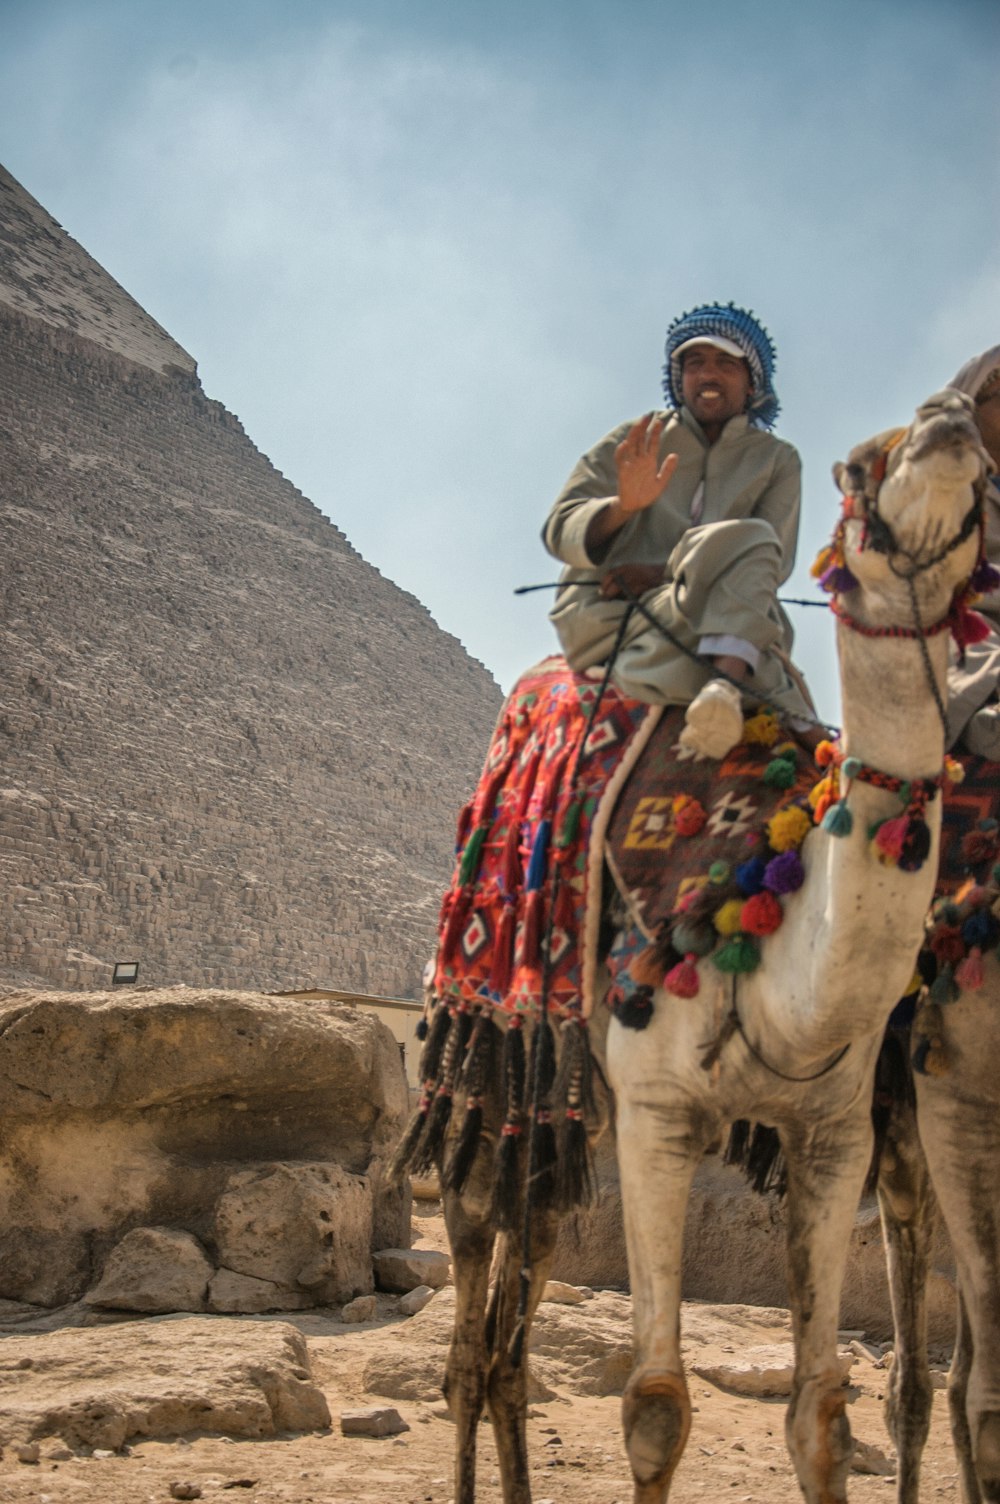 man riding camel on mountain during daytime